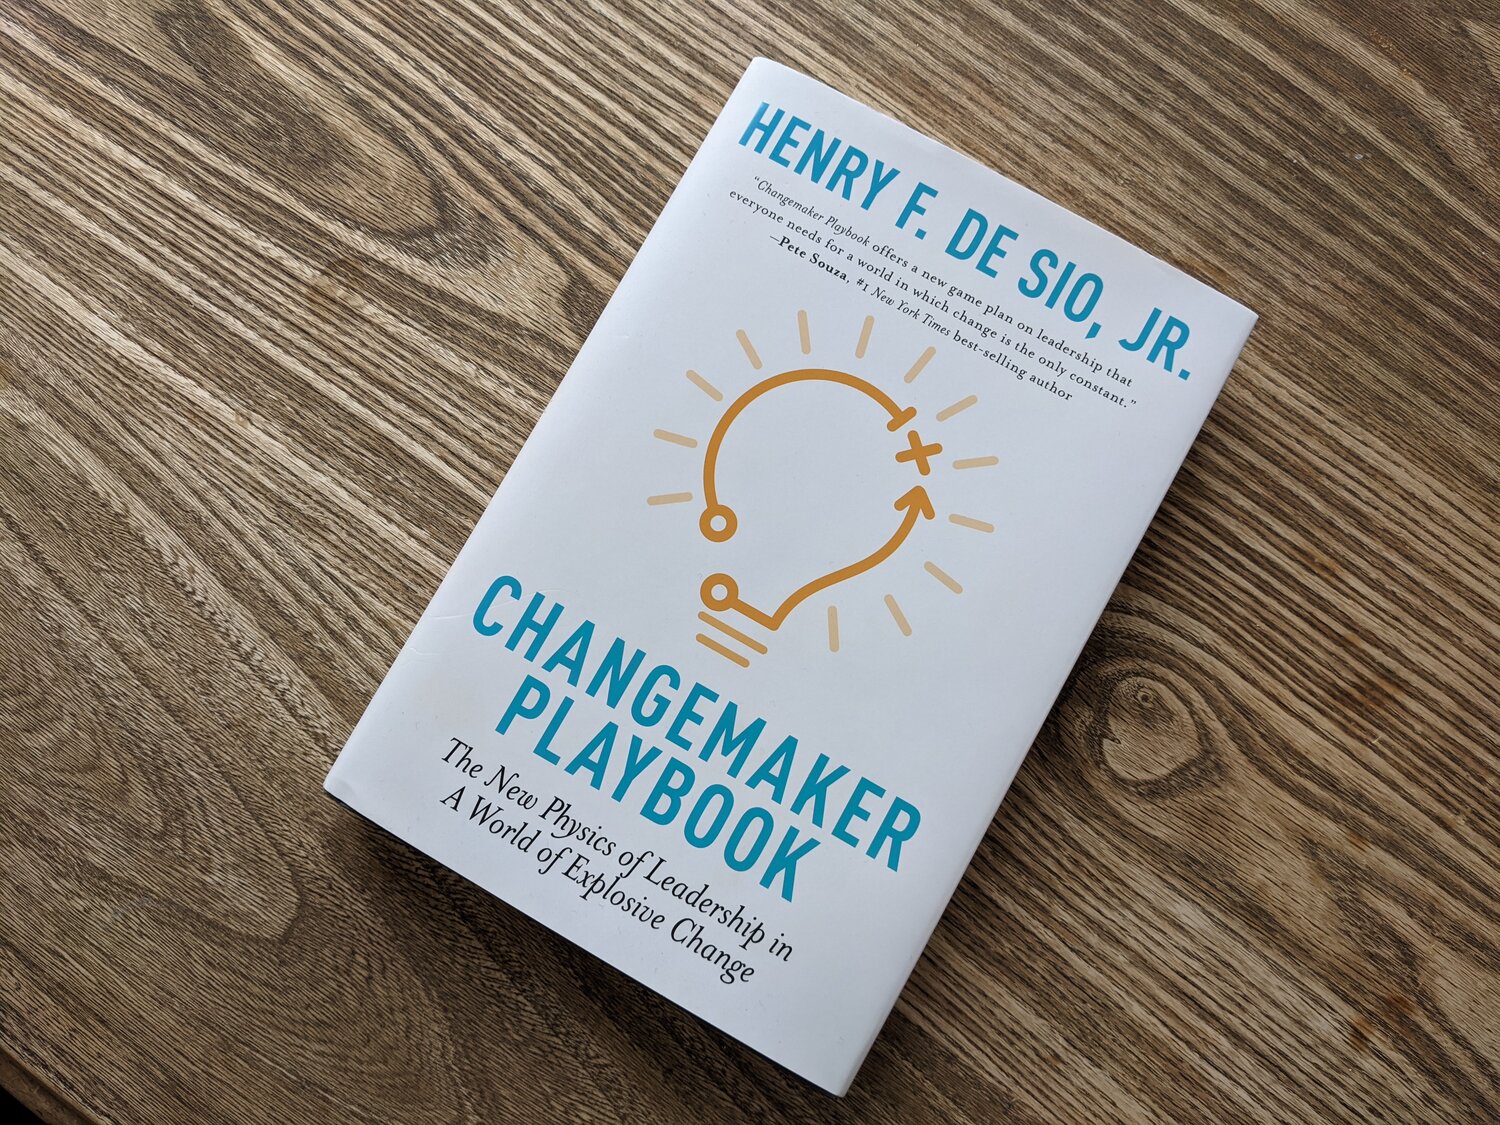 Changemaker Playbook: BRIDGE in conversation with Henry De Sio